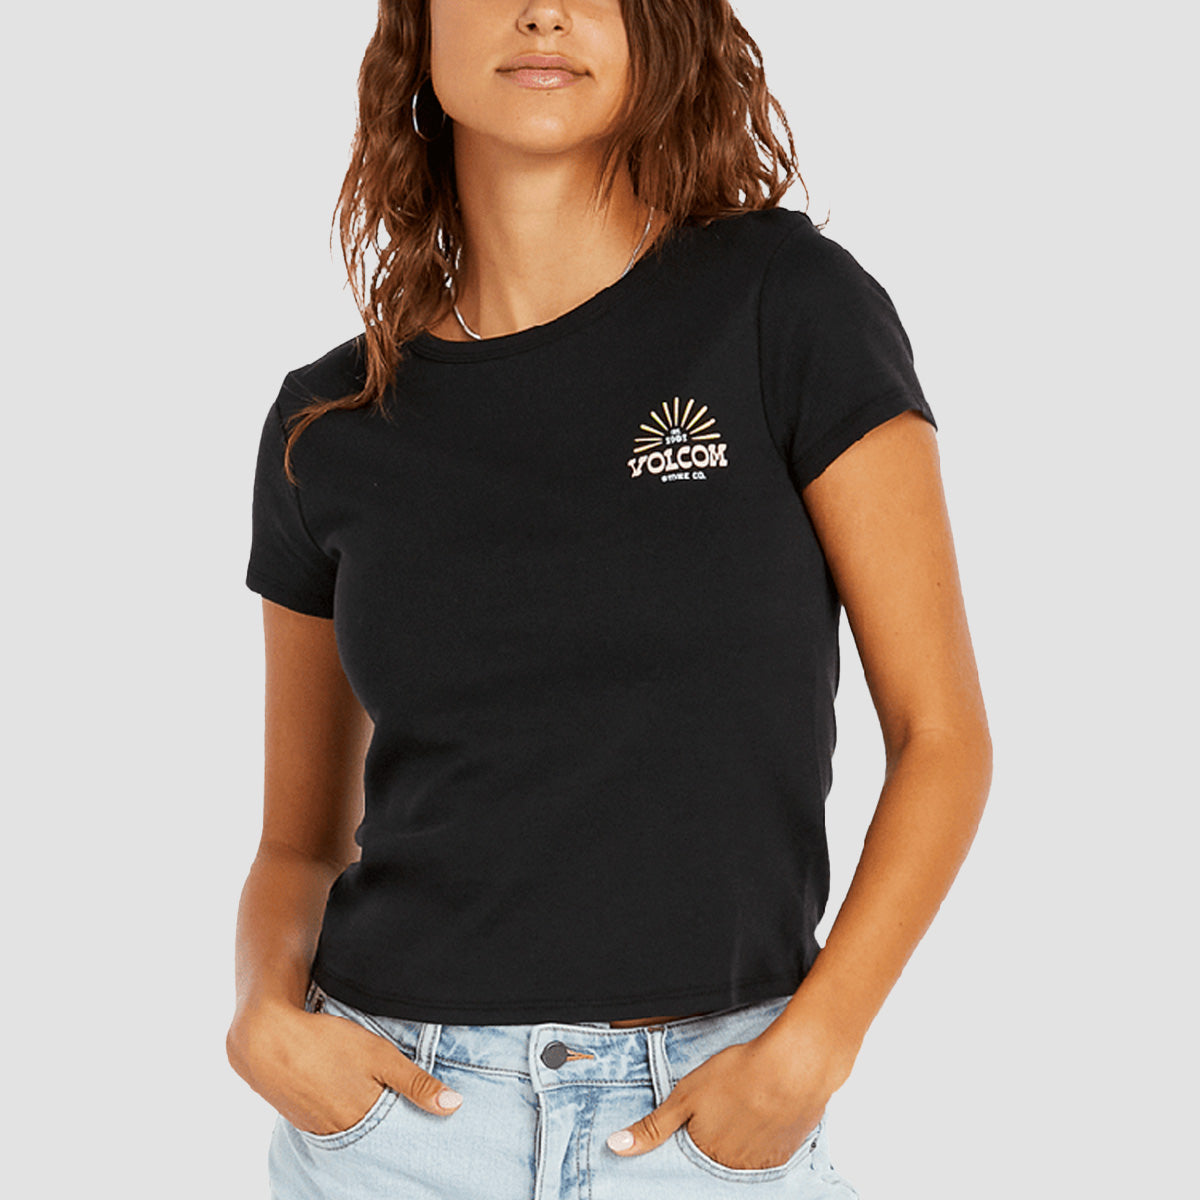 Volcom Have A Clue T-Shirt Black Womens